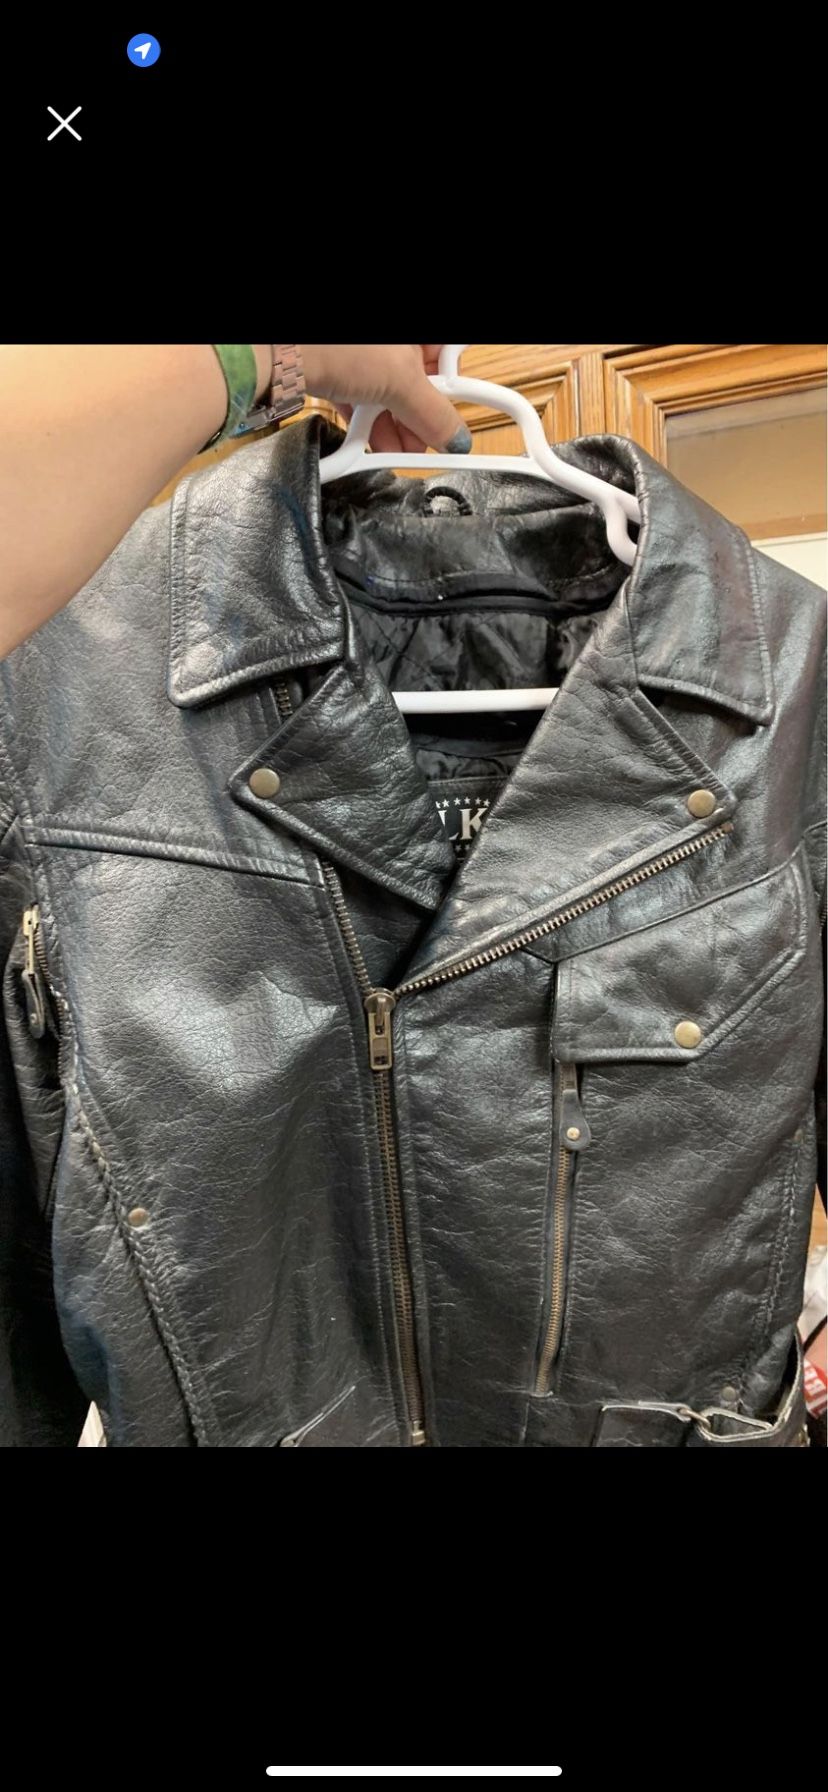 Leather Motorcycle Jacket Large $35